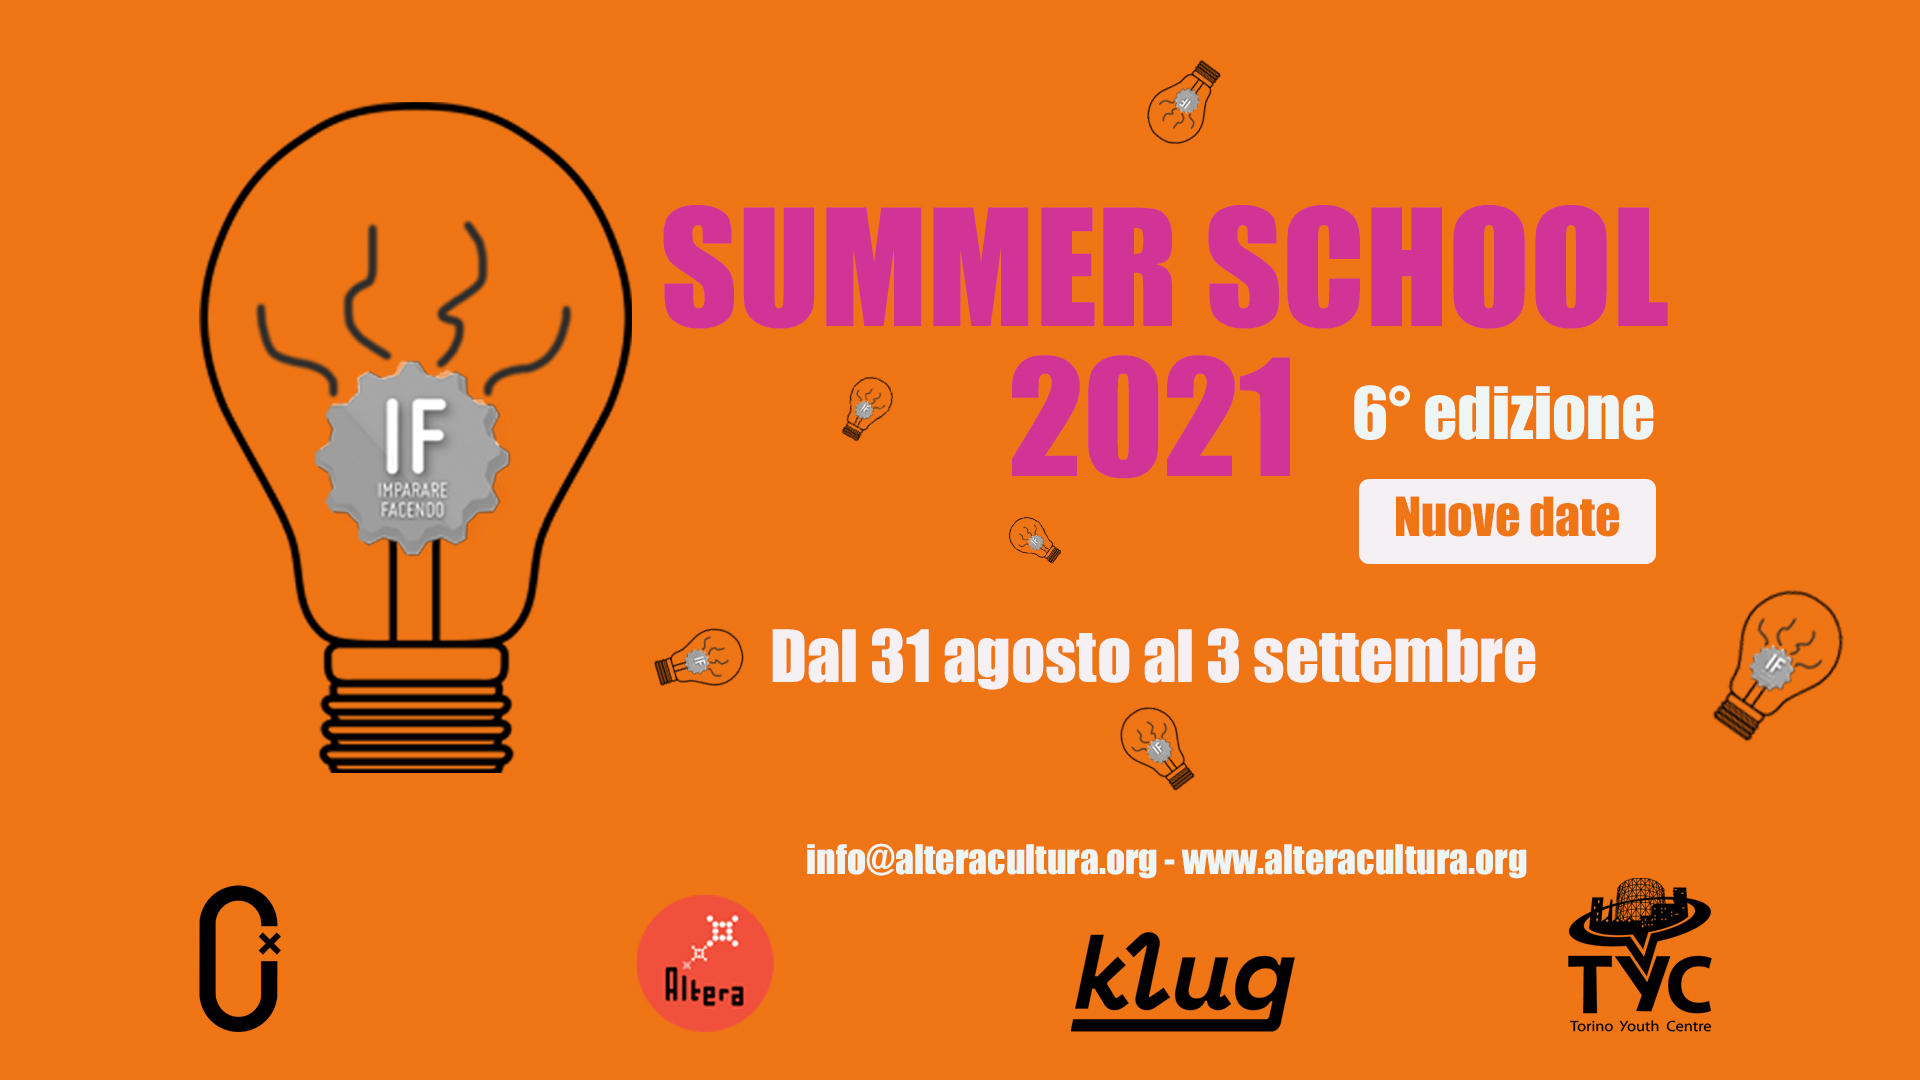 Altera APS / IF Summer School 2021 / 6° edizione dal 31 agosto al 3 settembre